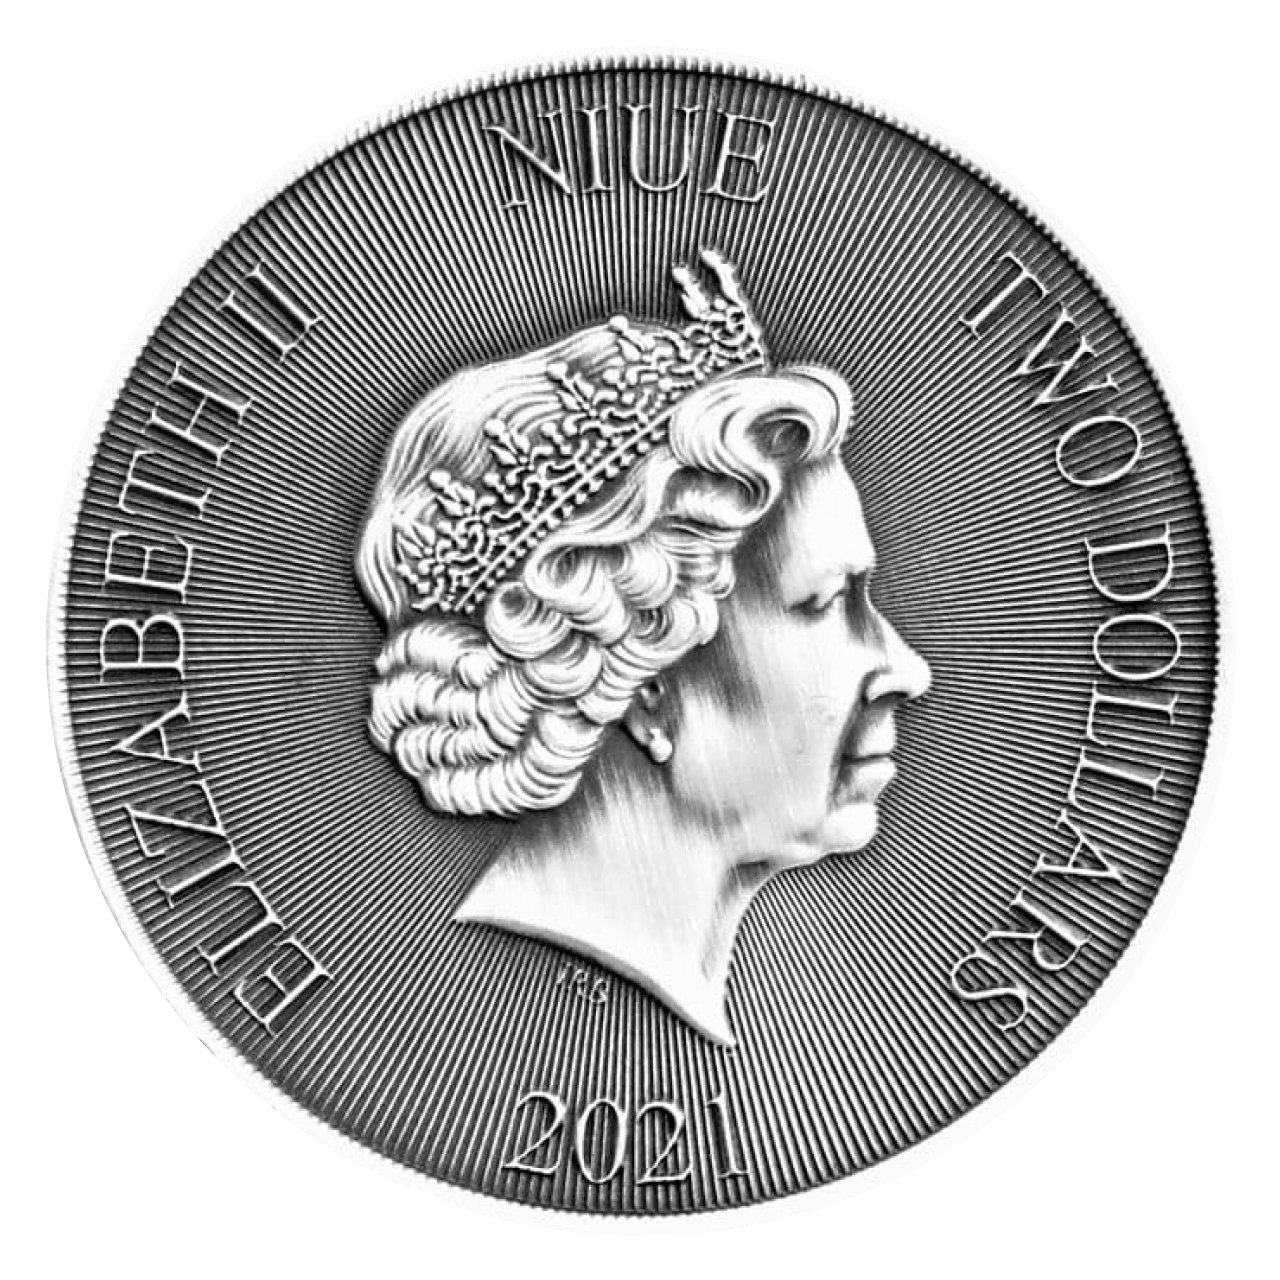 Robin Hood 1 oz Silver Coin - Niue $2 - Antique Finish